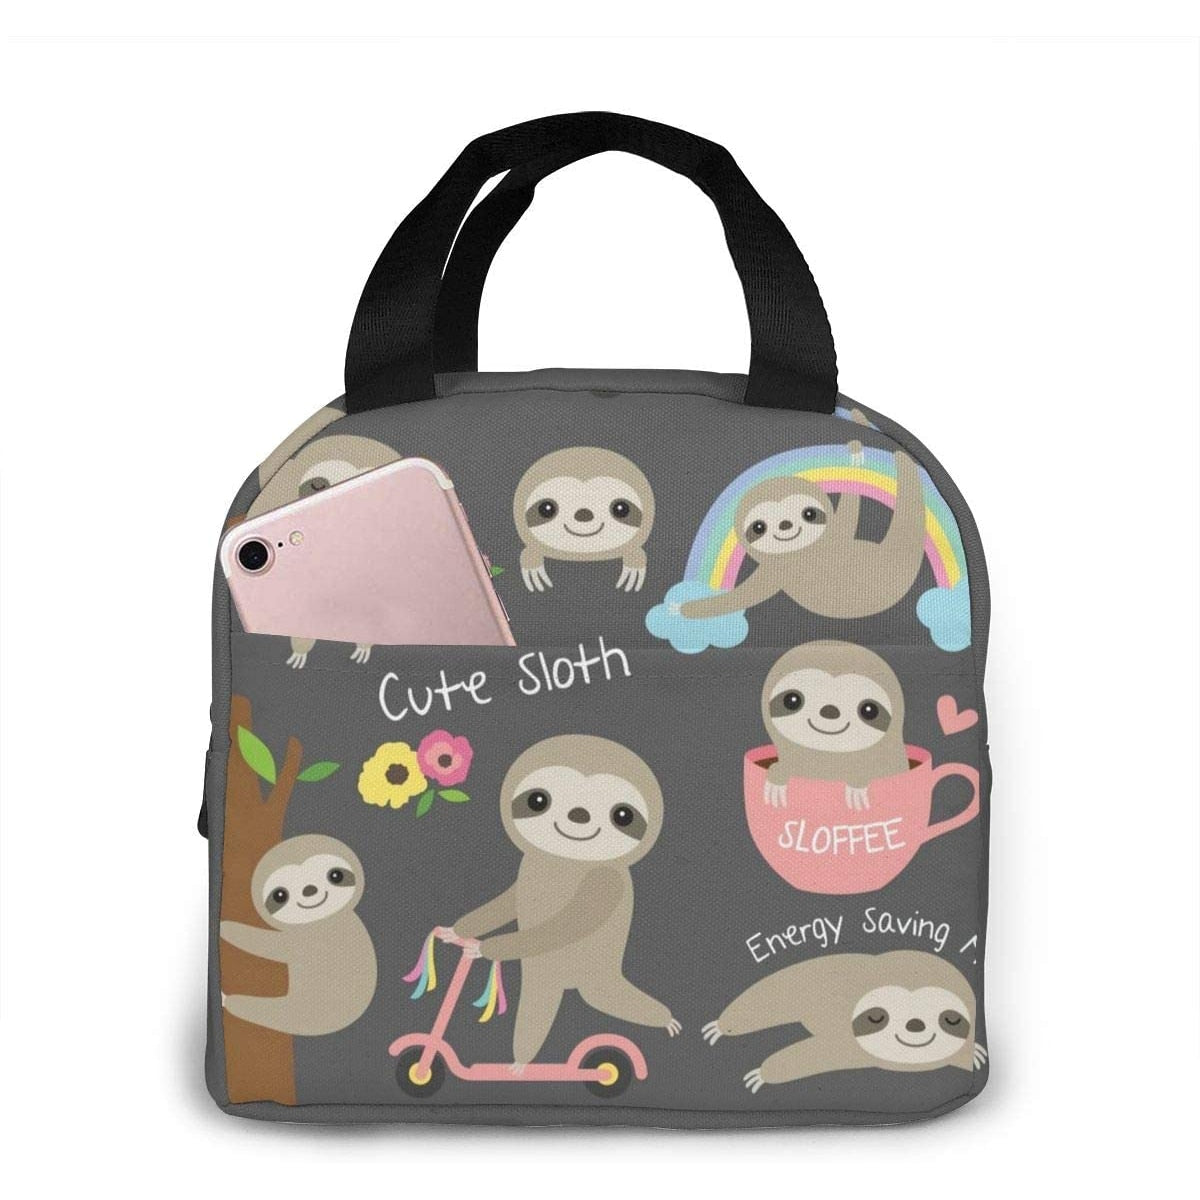 Cute Sloth Lunch Bag